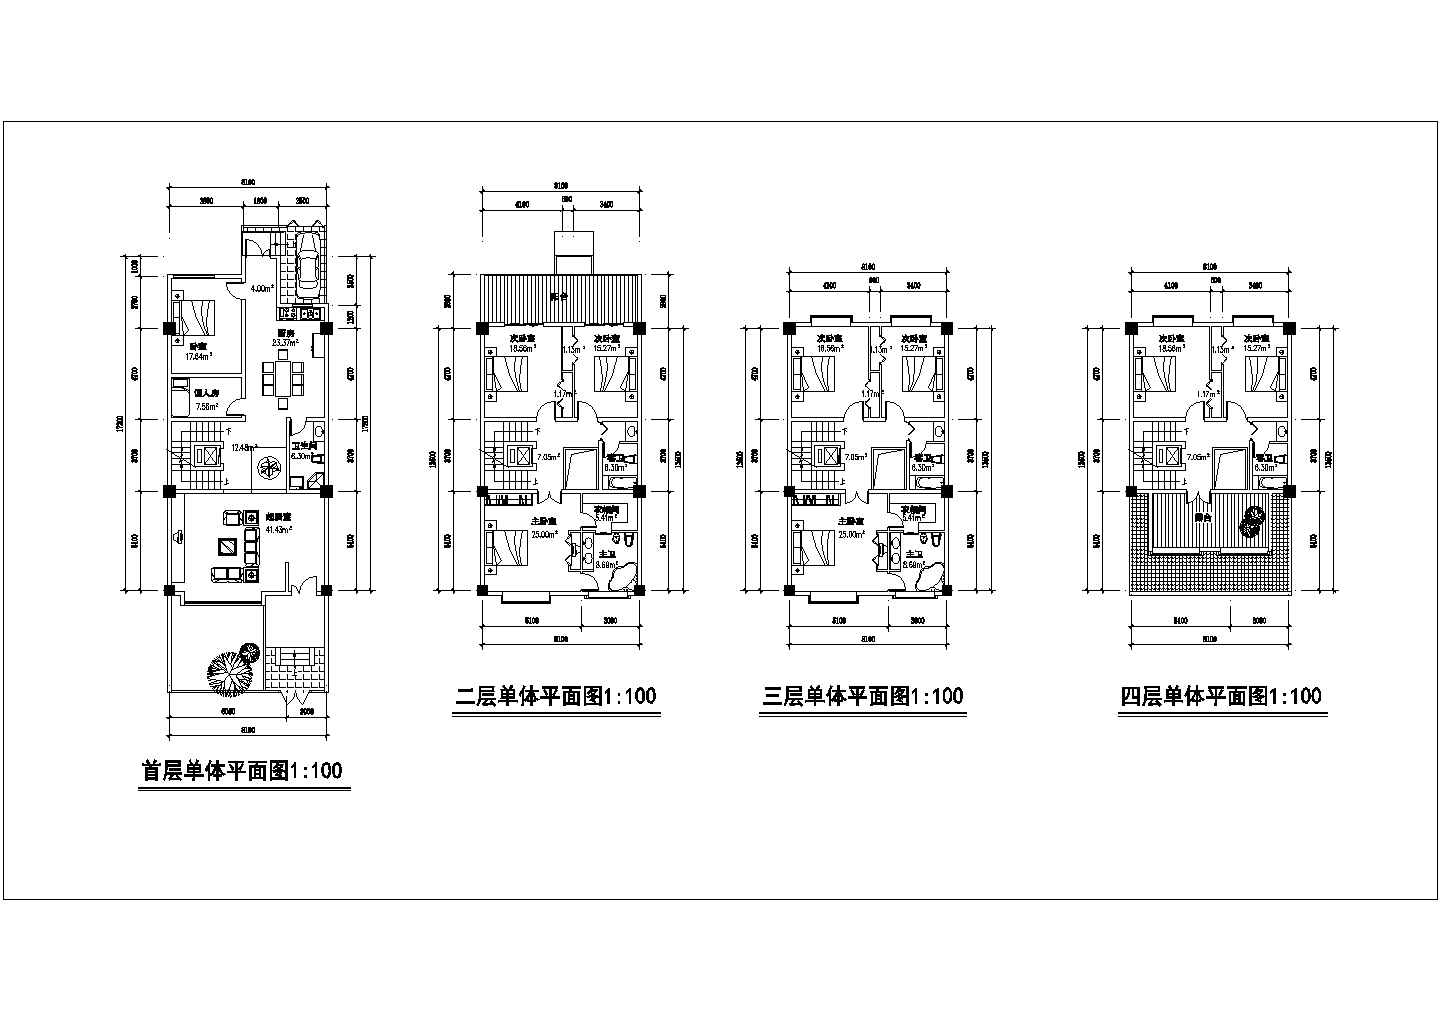 长17.2米 宽8.1米 私人住宅建筑平面设计图